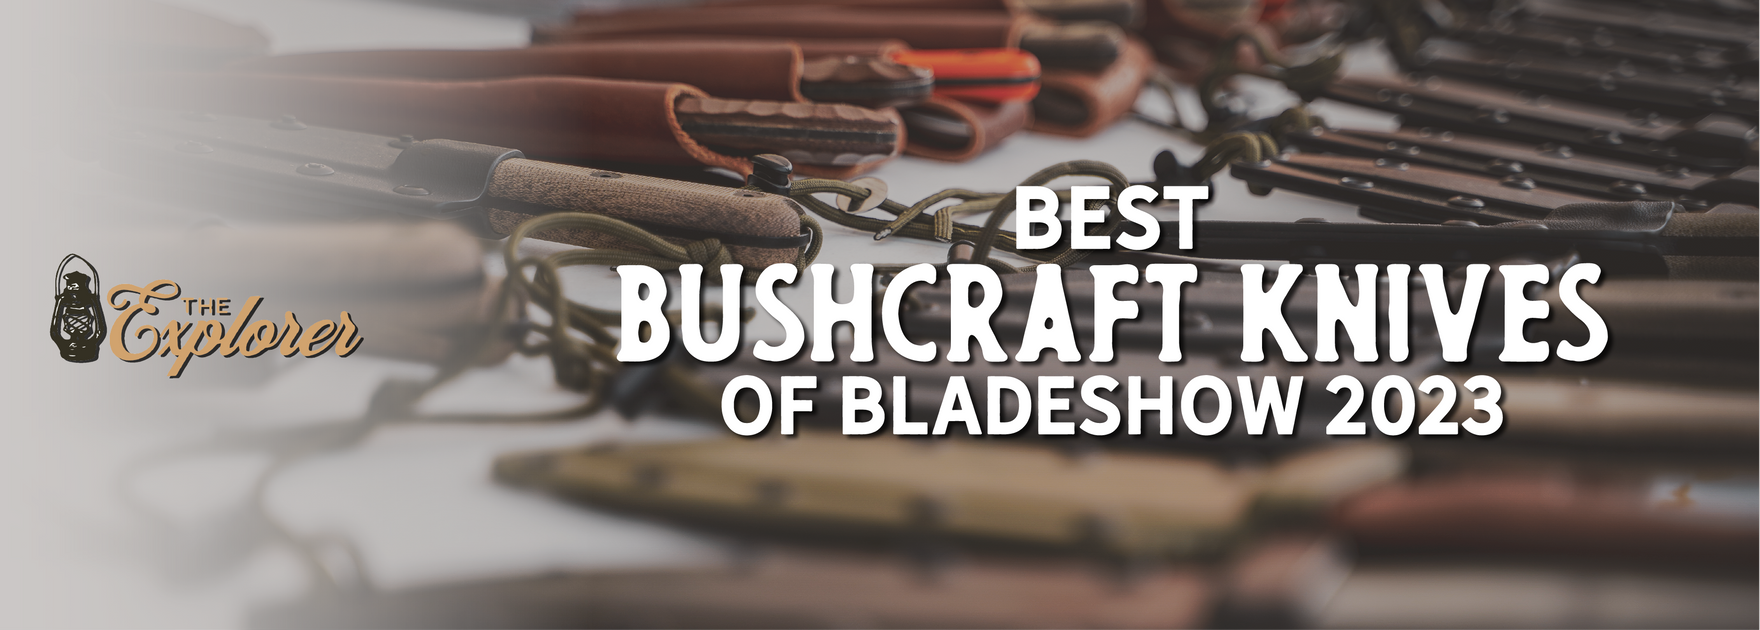 Best Bushcraft Knives of 2023